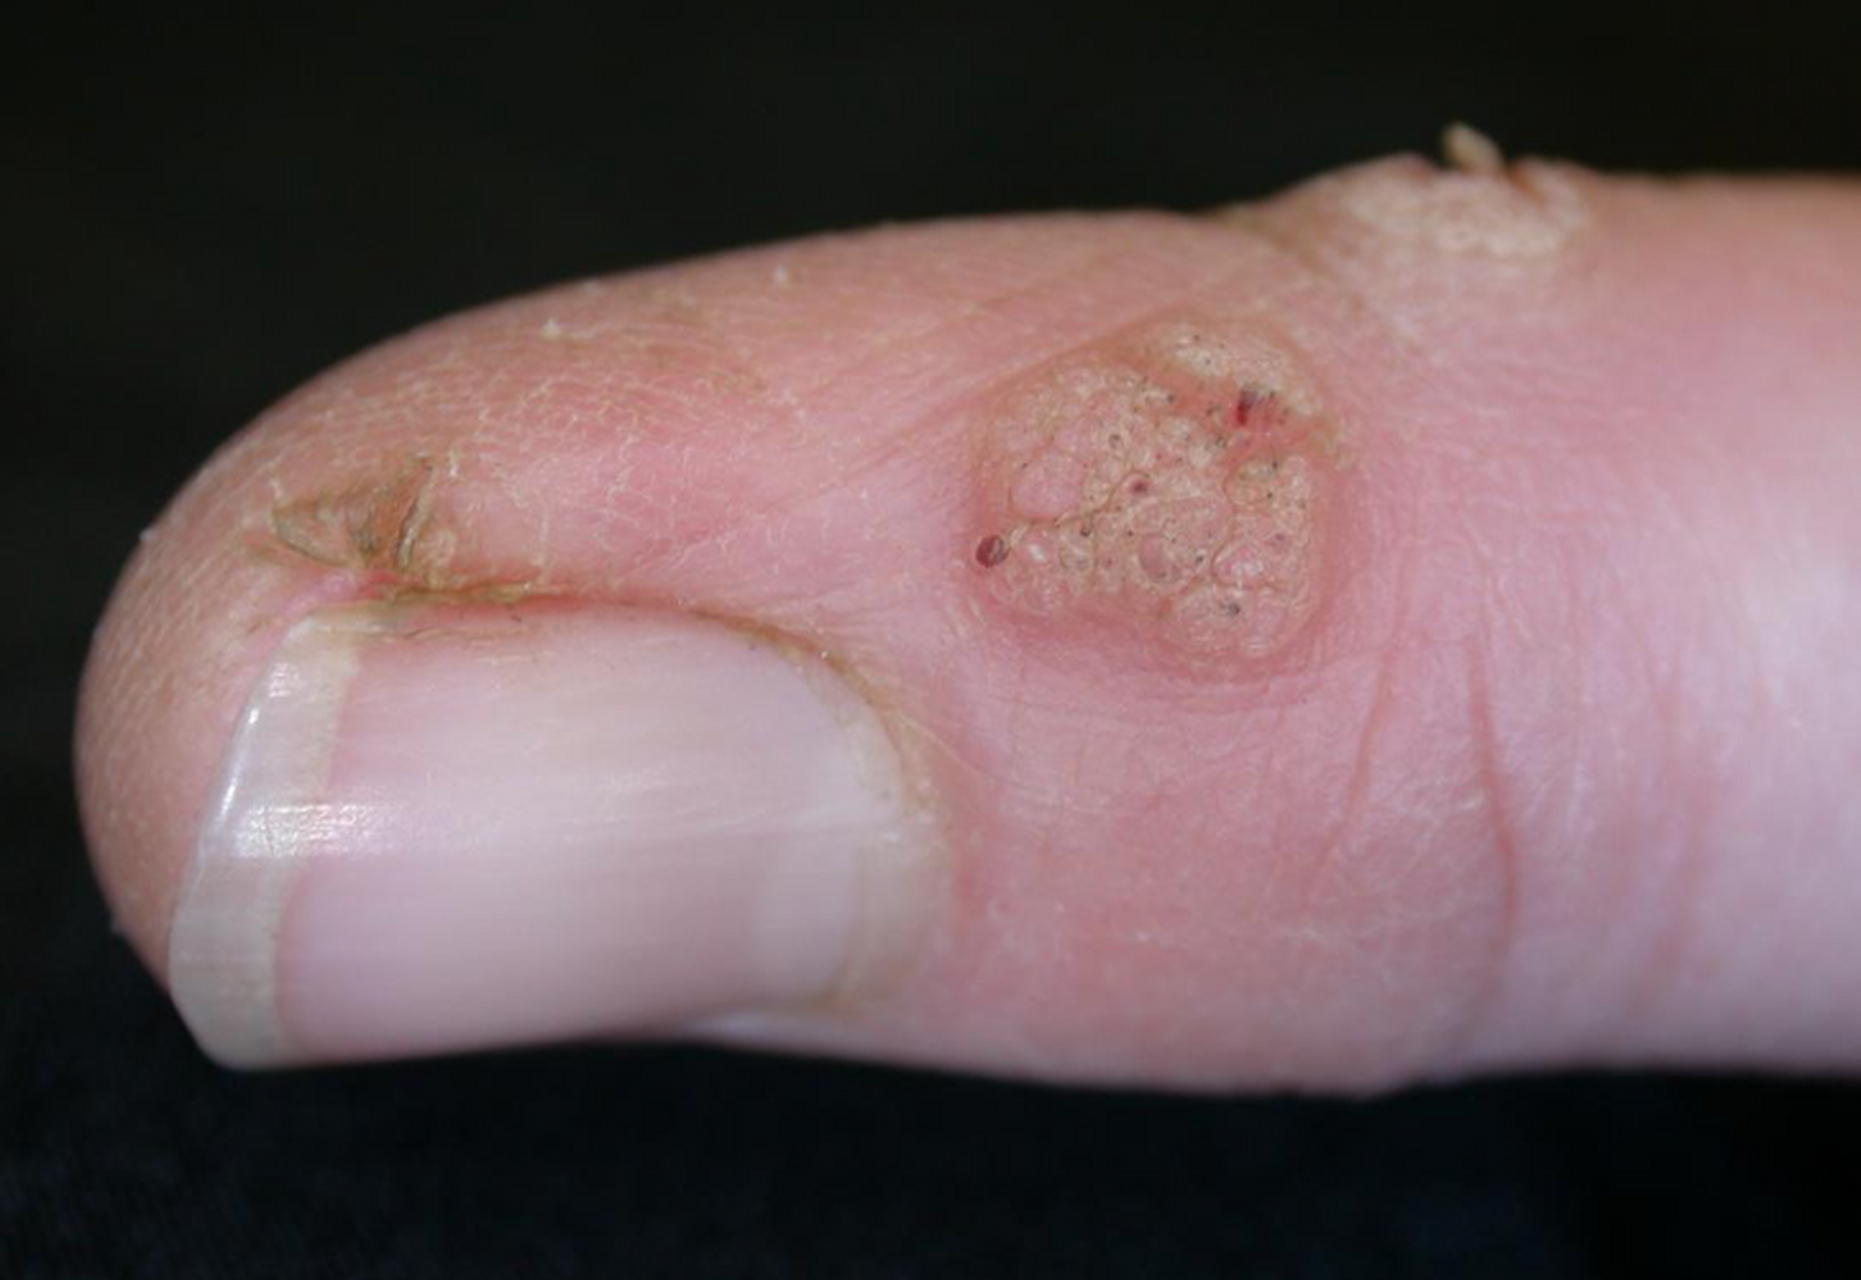 寻常疣,也叫手指疣,是一种常见的病毒感染所致皮肤病